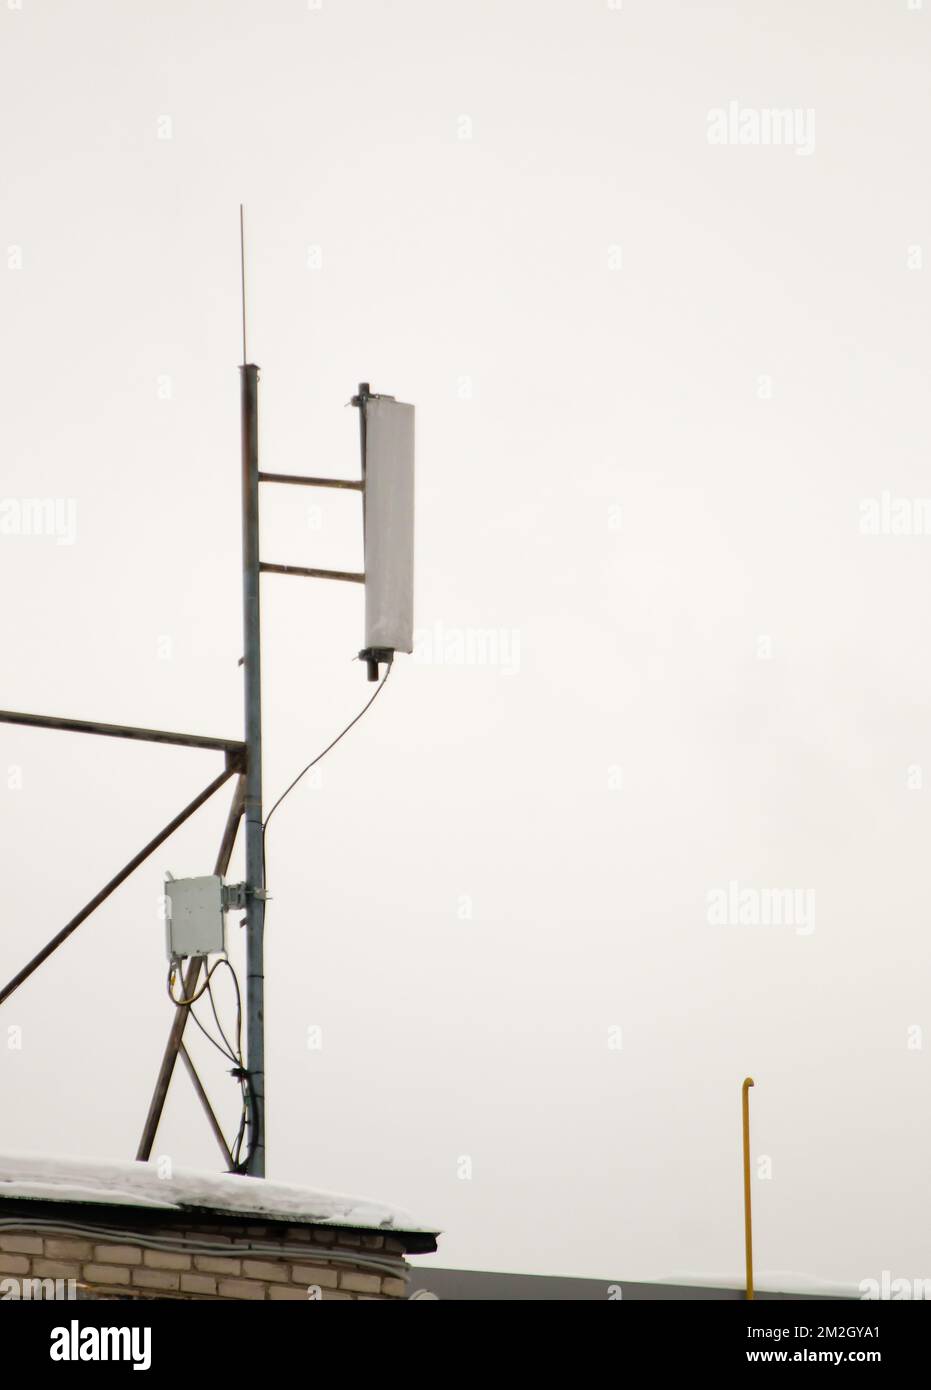 Eine Mobilfunkantenne auf dem Dach des Hauses sorgt für eine zuverlässige Verbindung. Schnee liegt auf dem Meilenstein, vor dem Hintergrund eines grauen Himmels. Bewölkt, kalter Wintertag, weiches Licht. Stockfoto